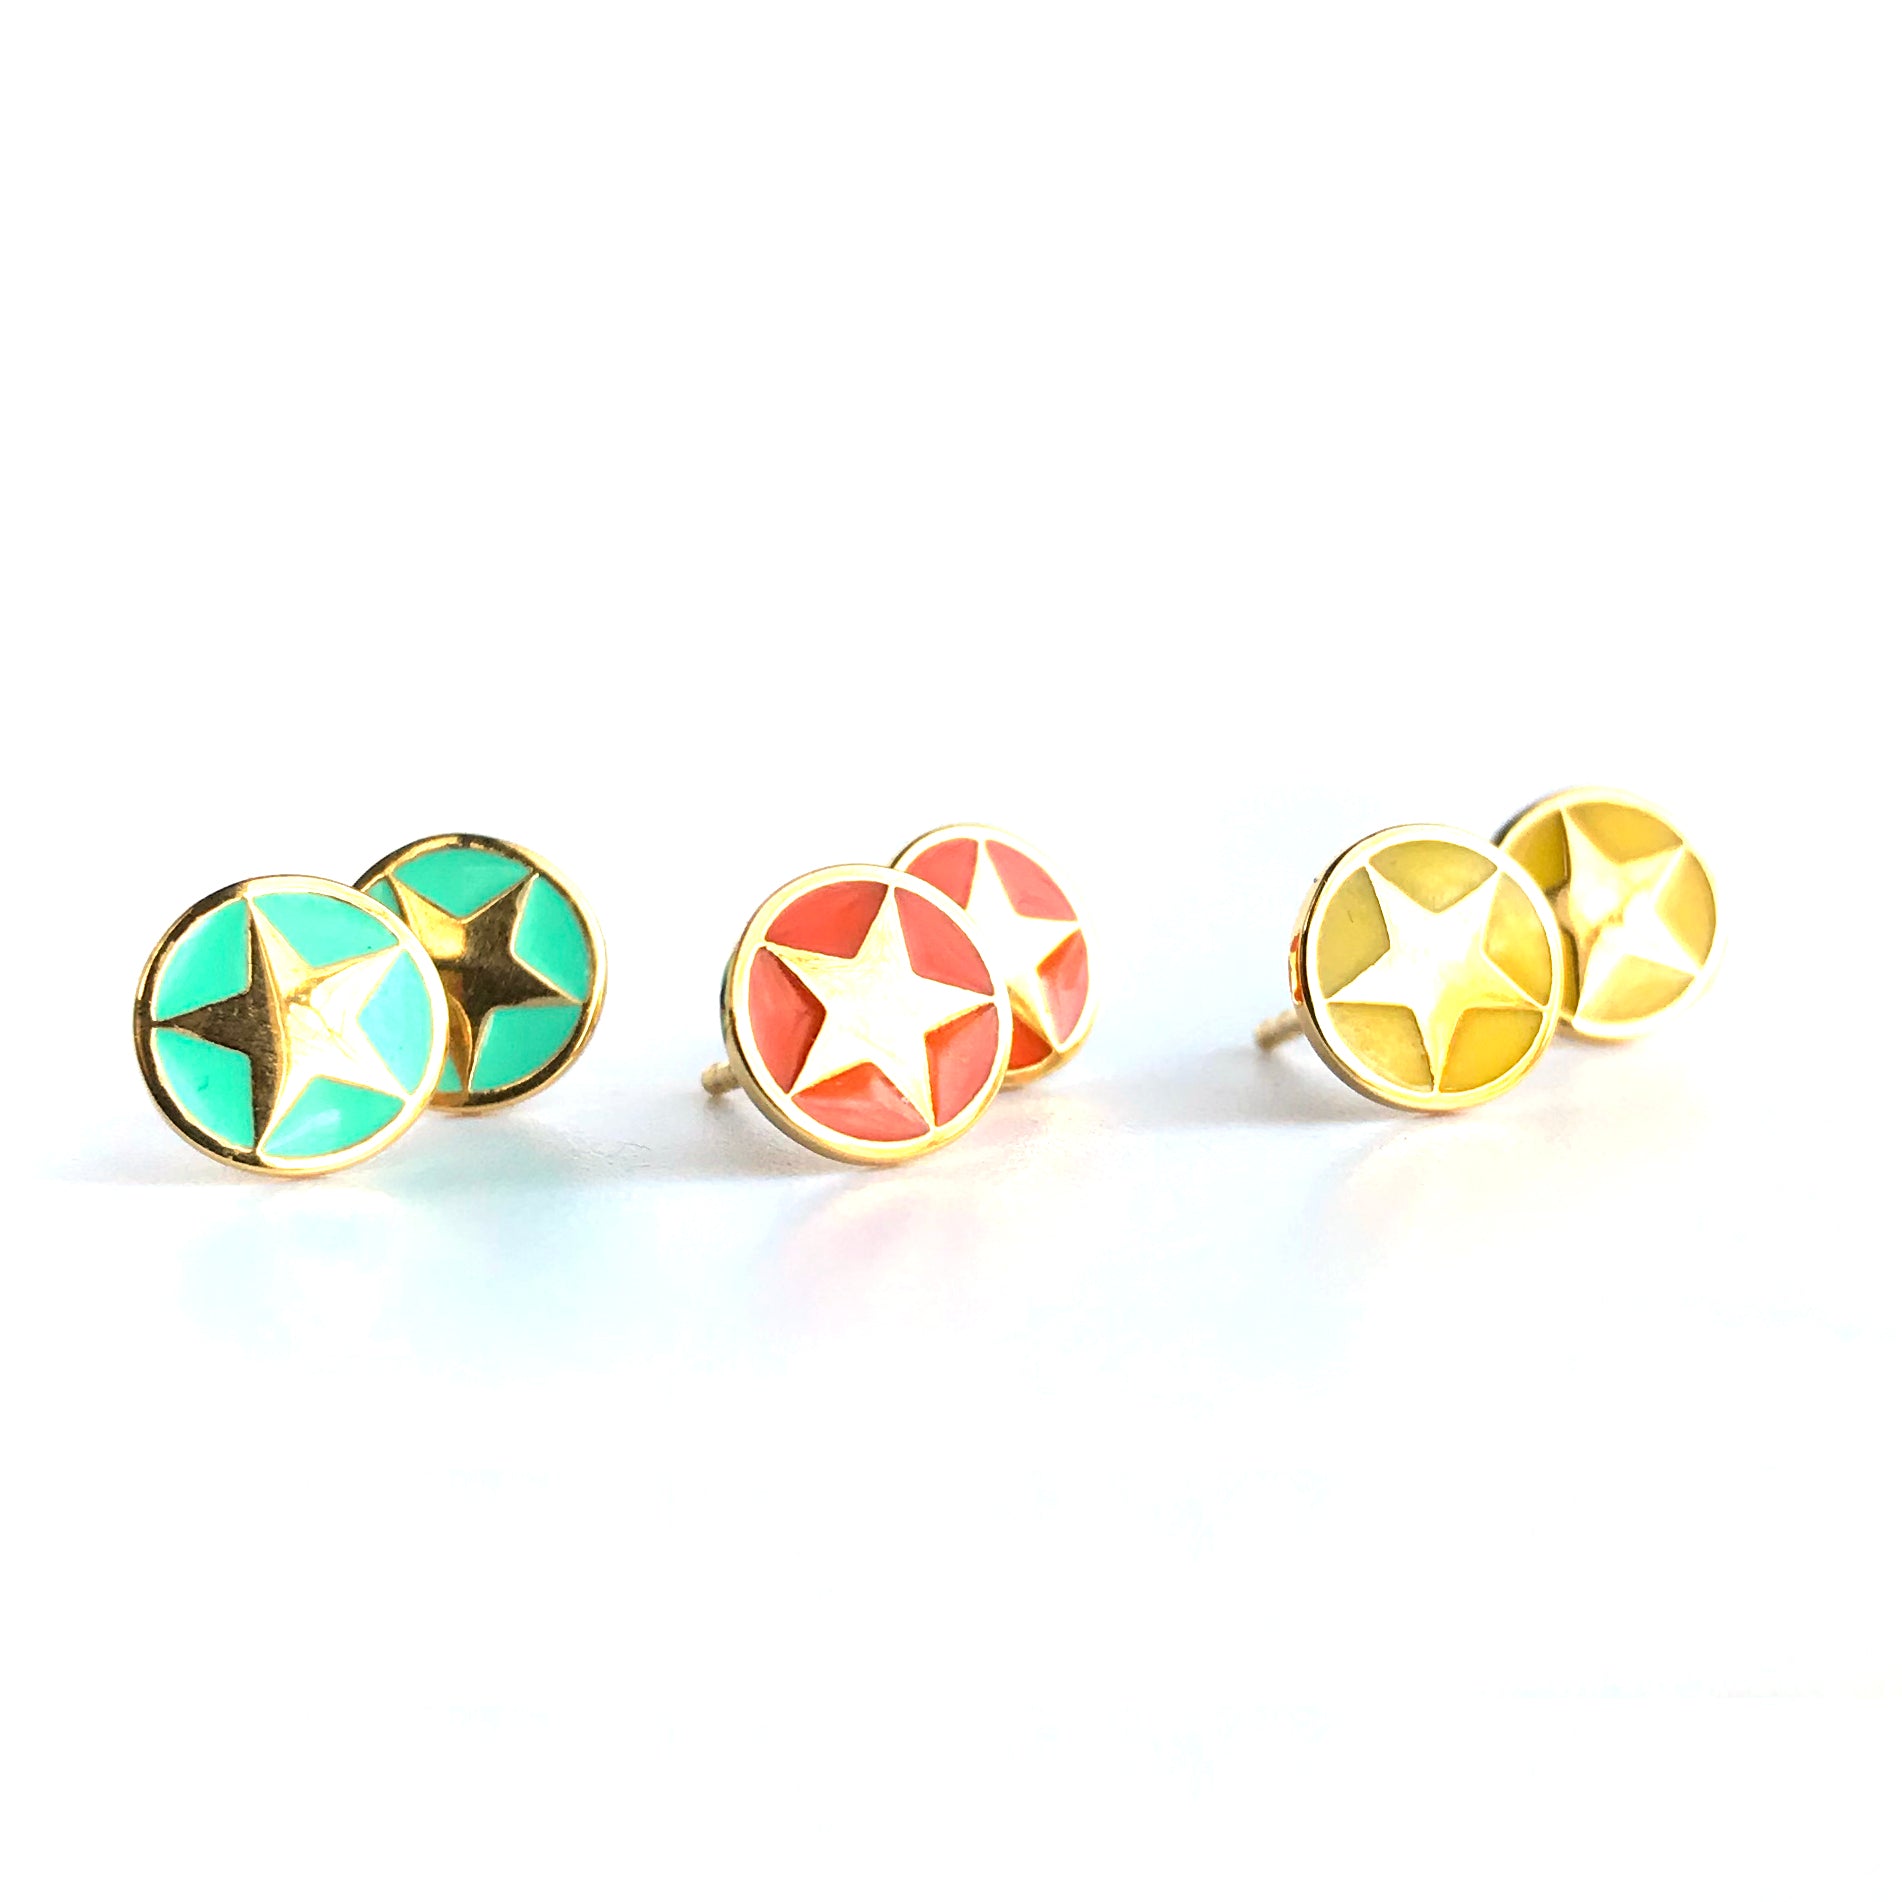 Enamel star earrings 